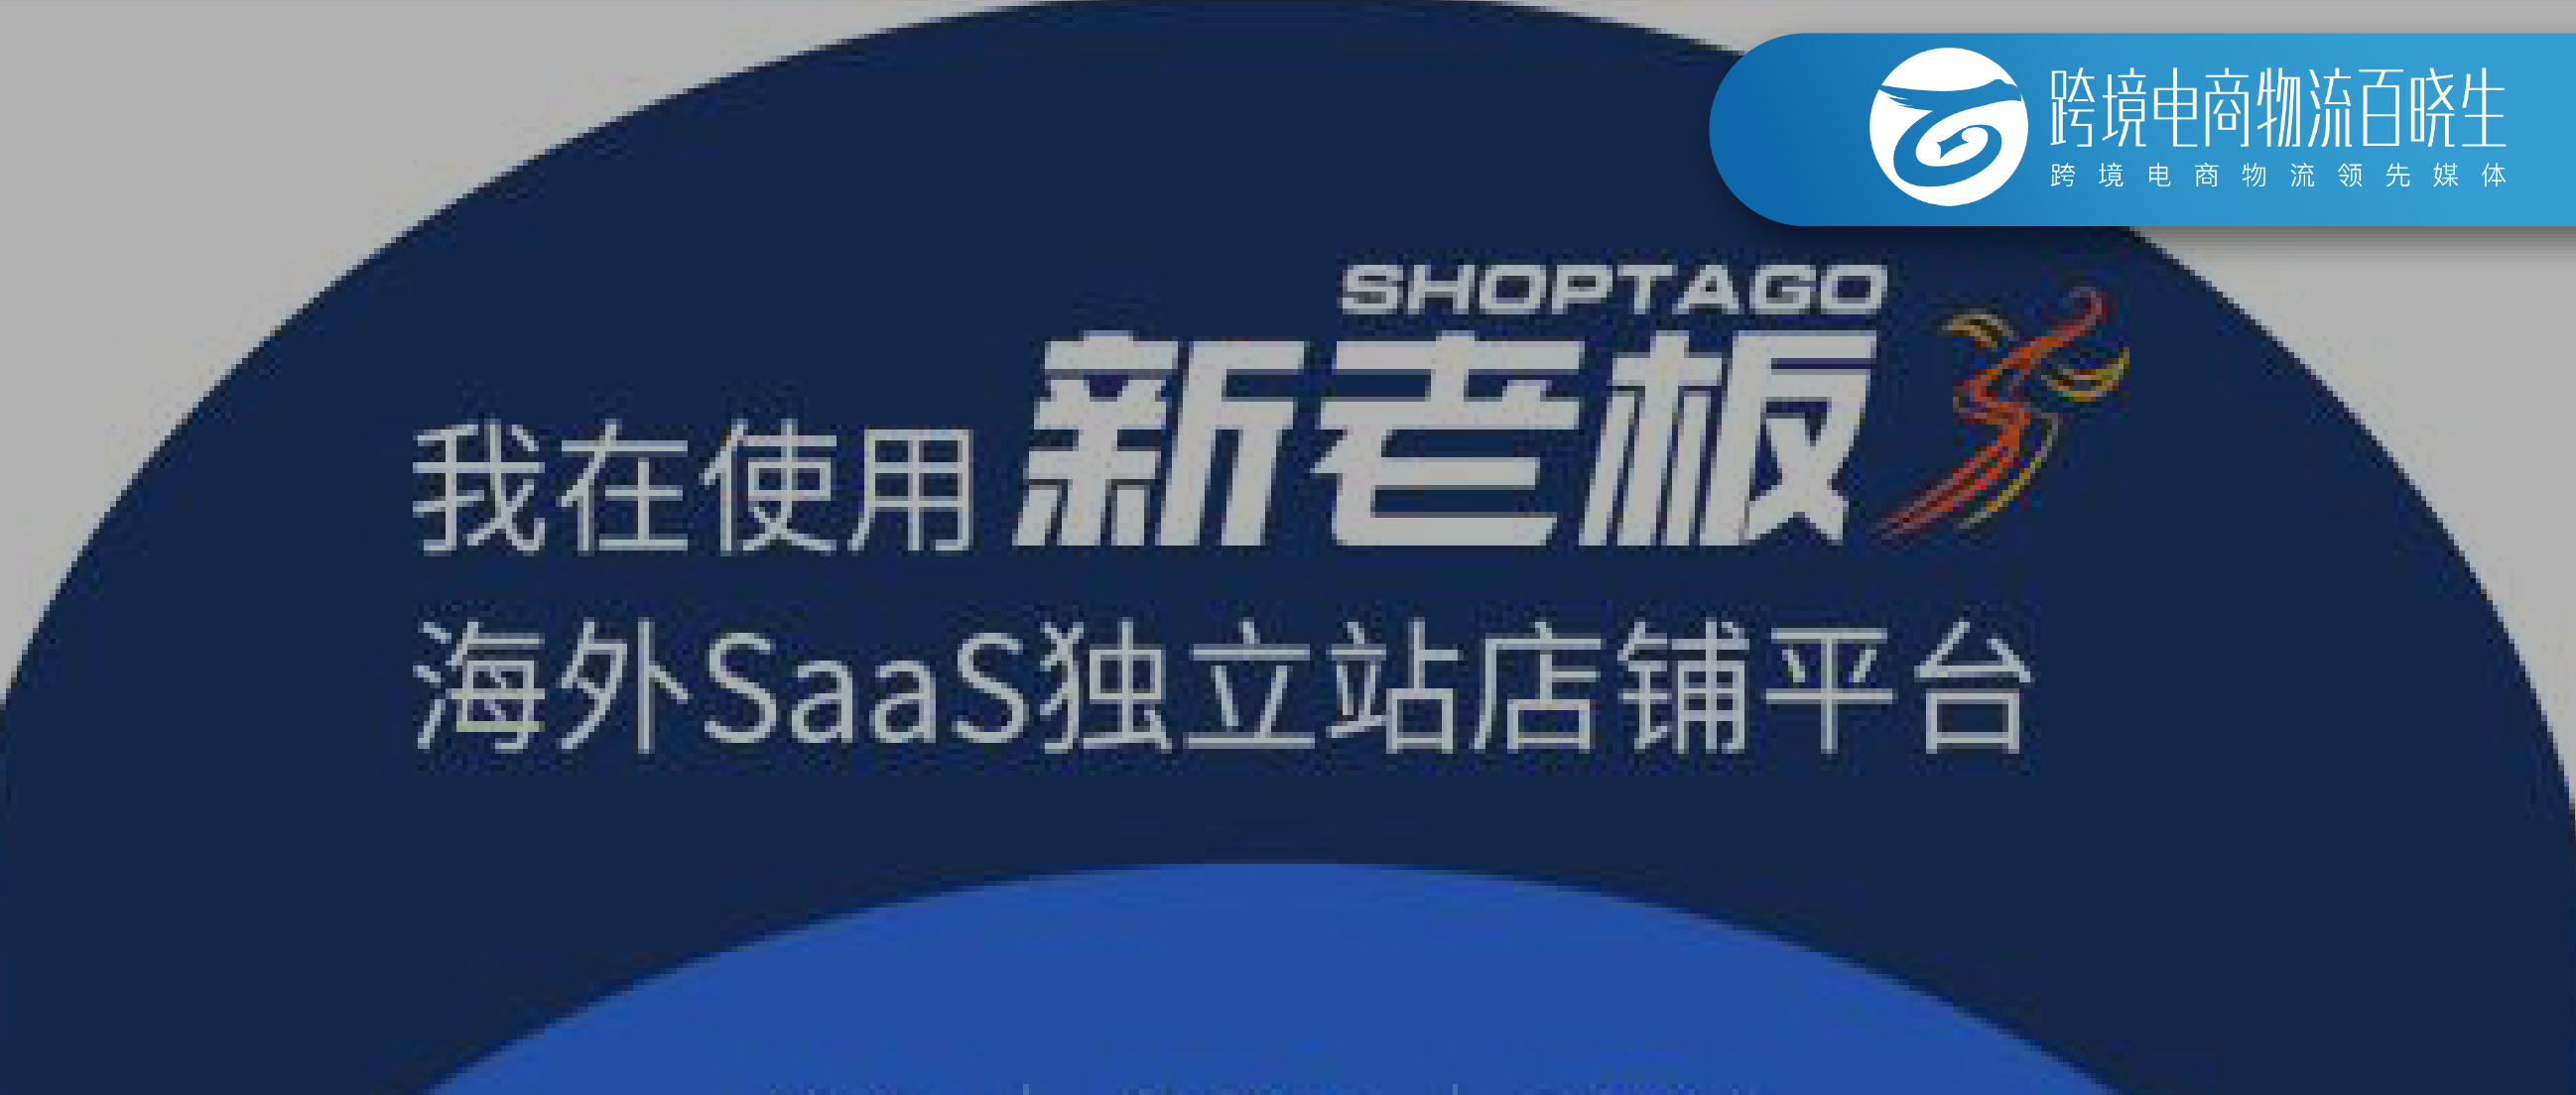 跨境独立站建站SaaS平台新老板Shoptago宣布永久关停